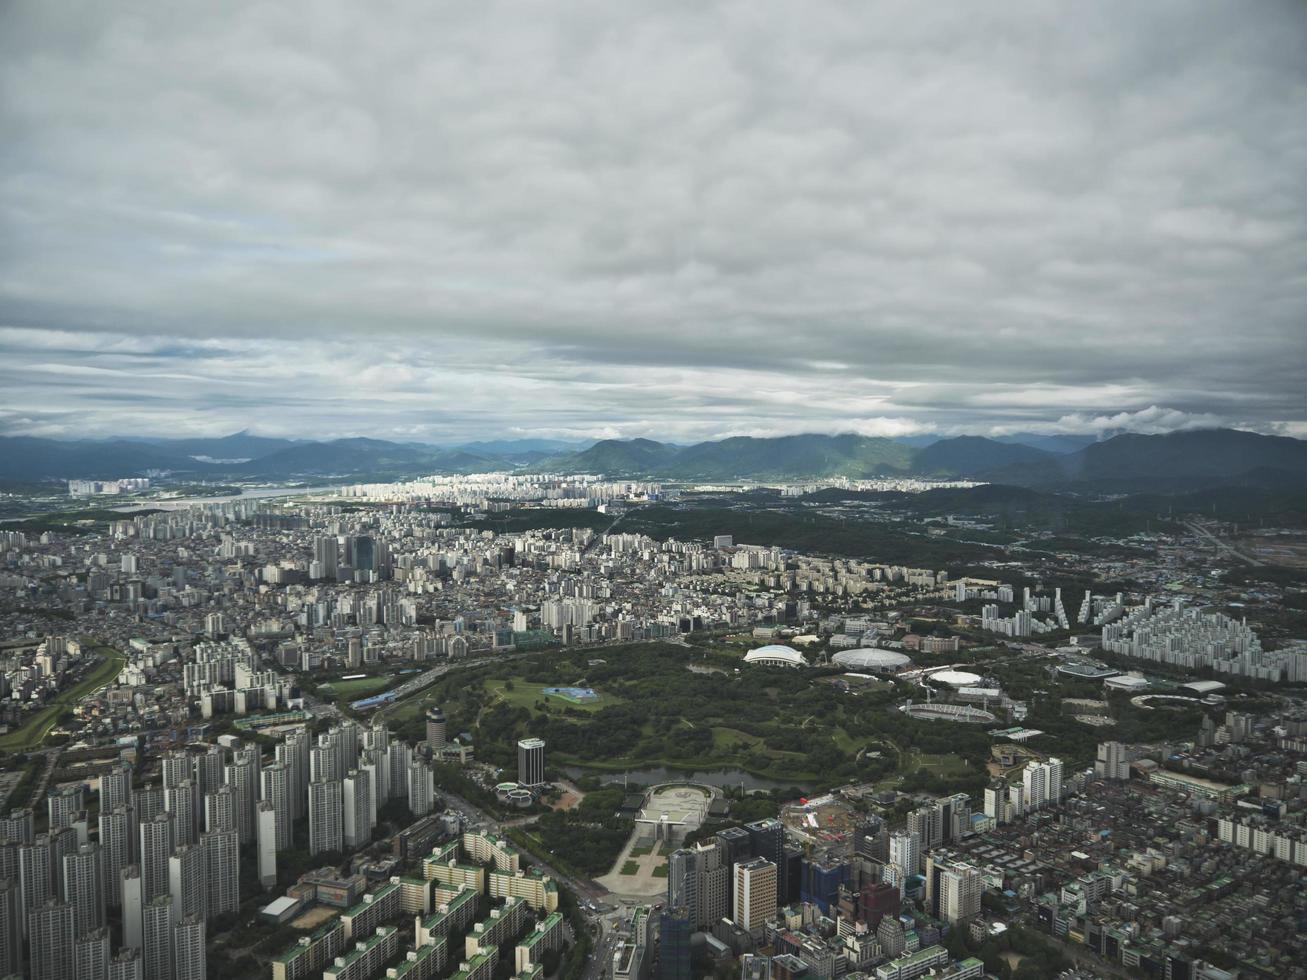 het prachtige uitzicht op de stad Seoel vanuit de lucht. Zuid-Korea foto